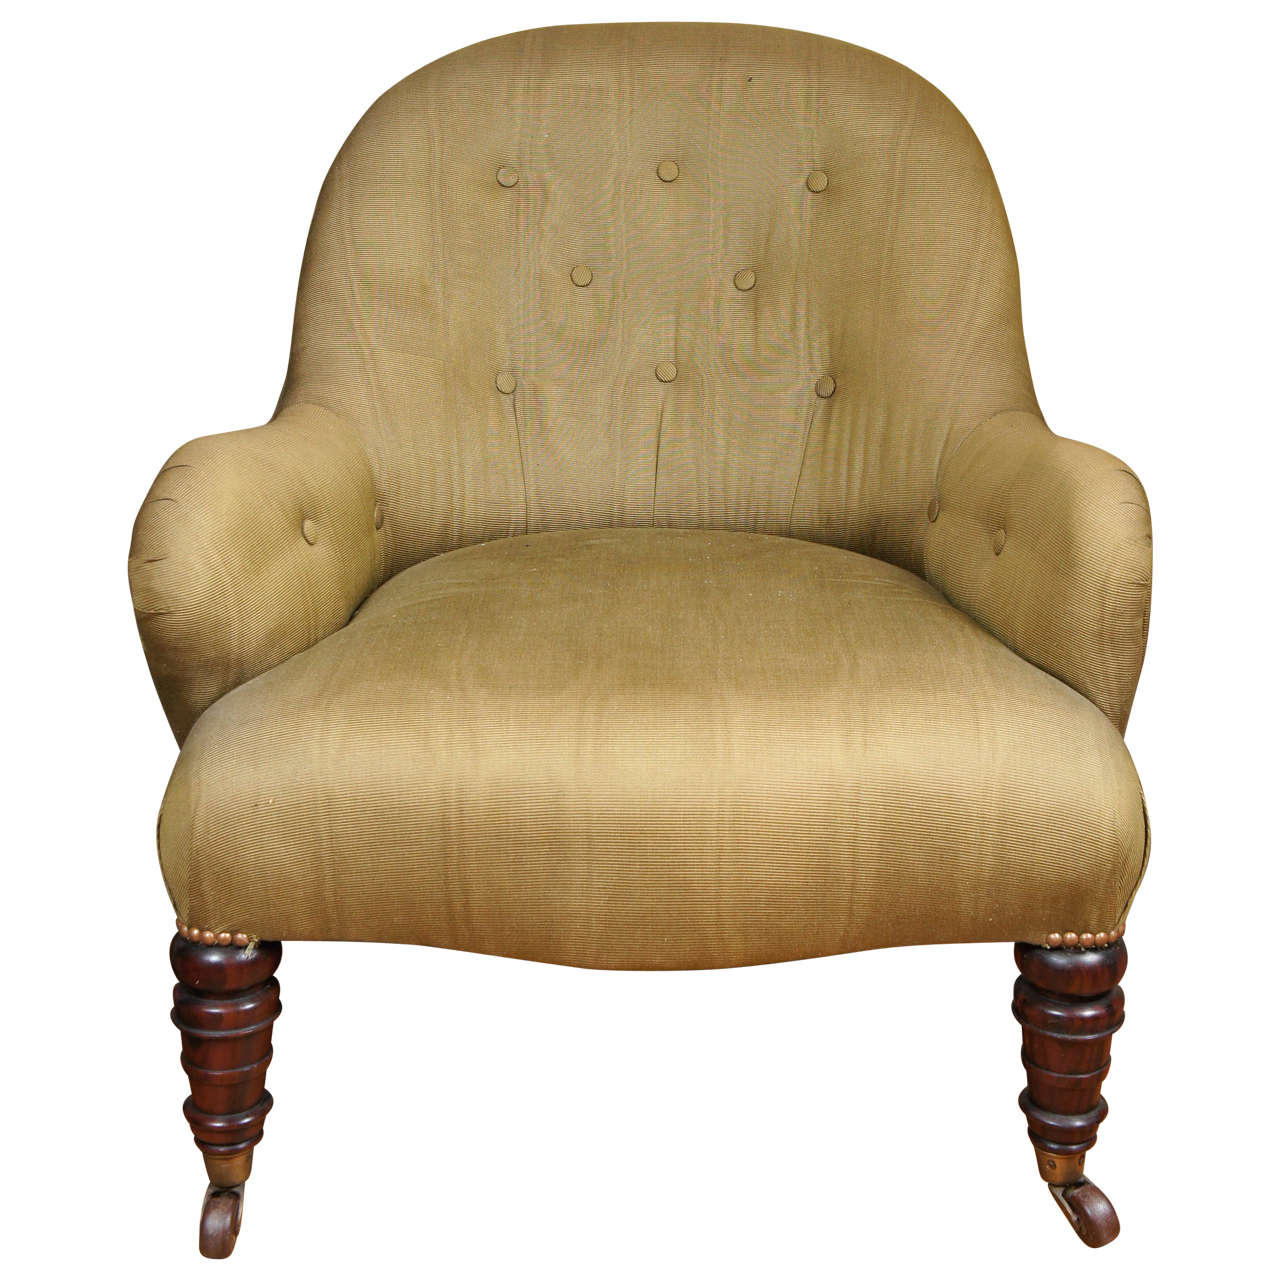 Late-Regency rosewood tub chair, ca. 1810